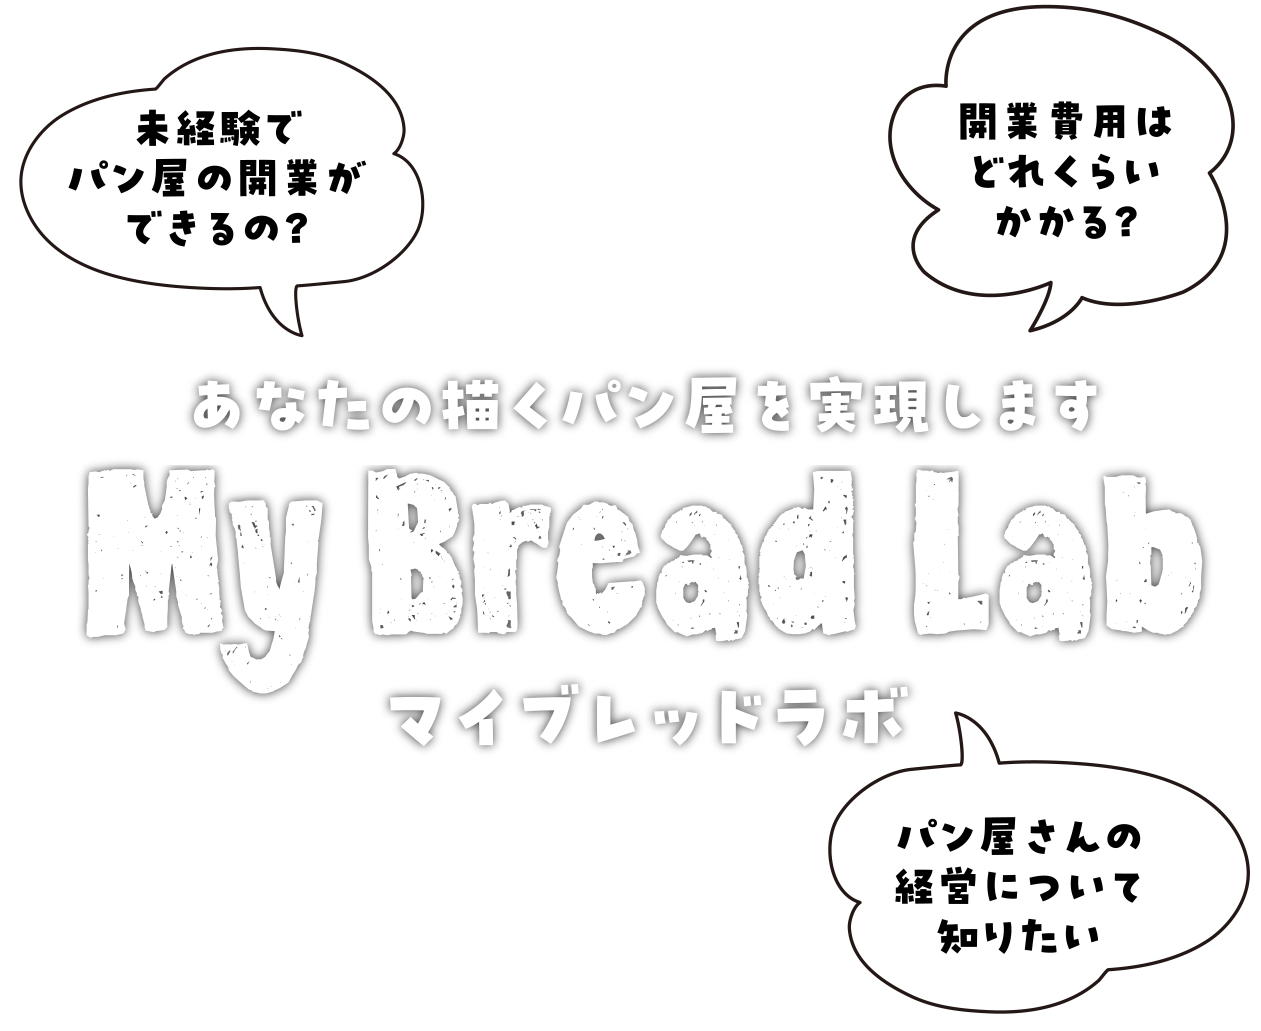 あなたの描くパン屋を実現します「My Bread Lab マイブレッドラボ」。未経験でパン屋の開業ができるの？開業費用はどれくらいかかる？パン屋さんの経営について知りたい。